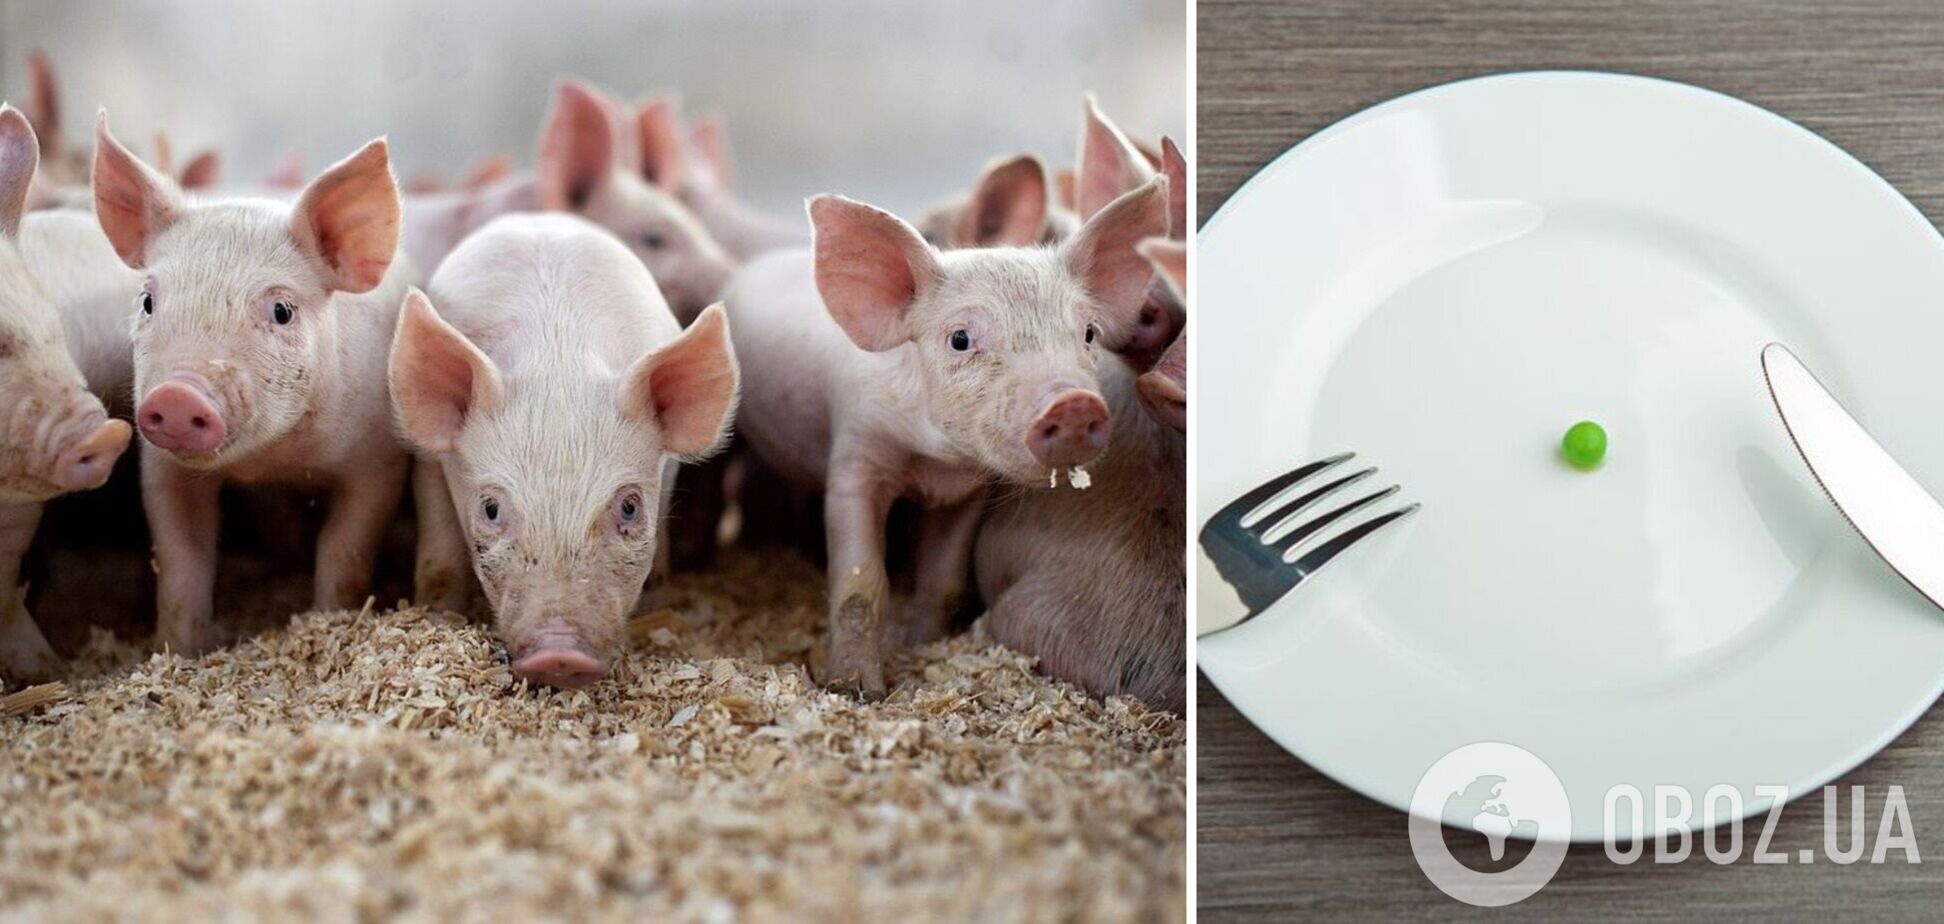 Производство свинины в Украине может прекратиться